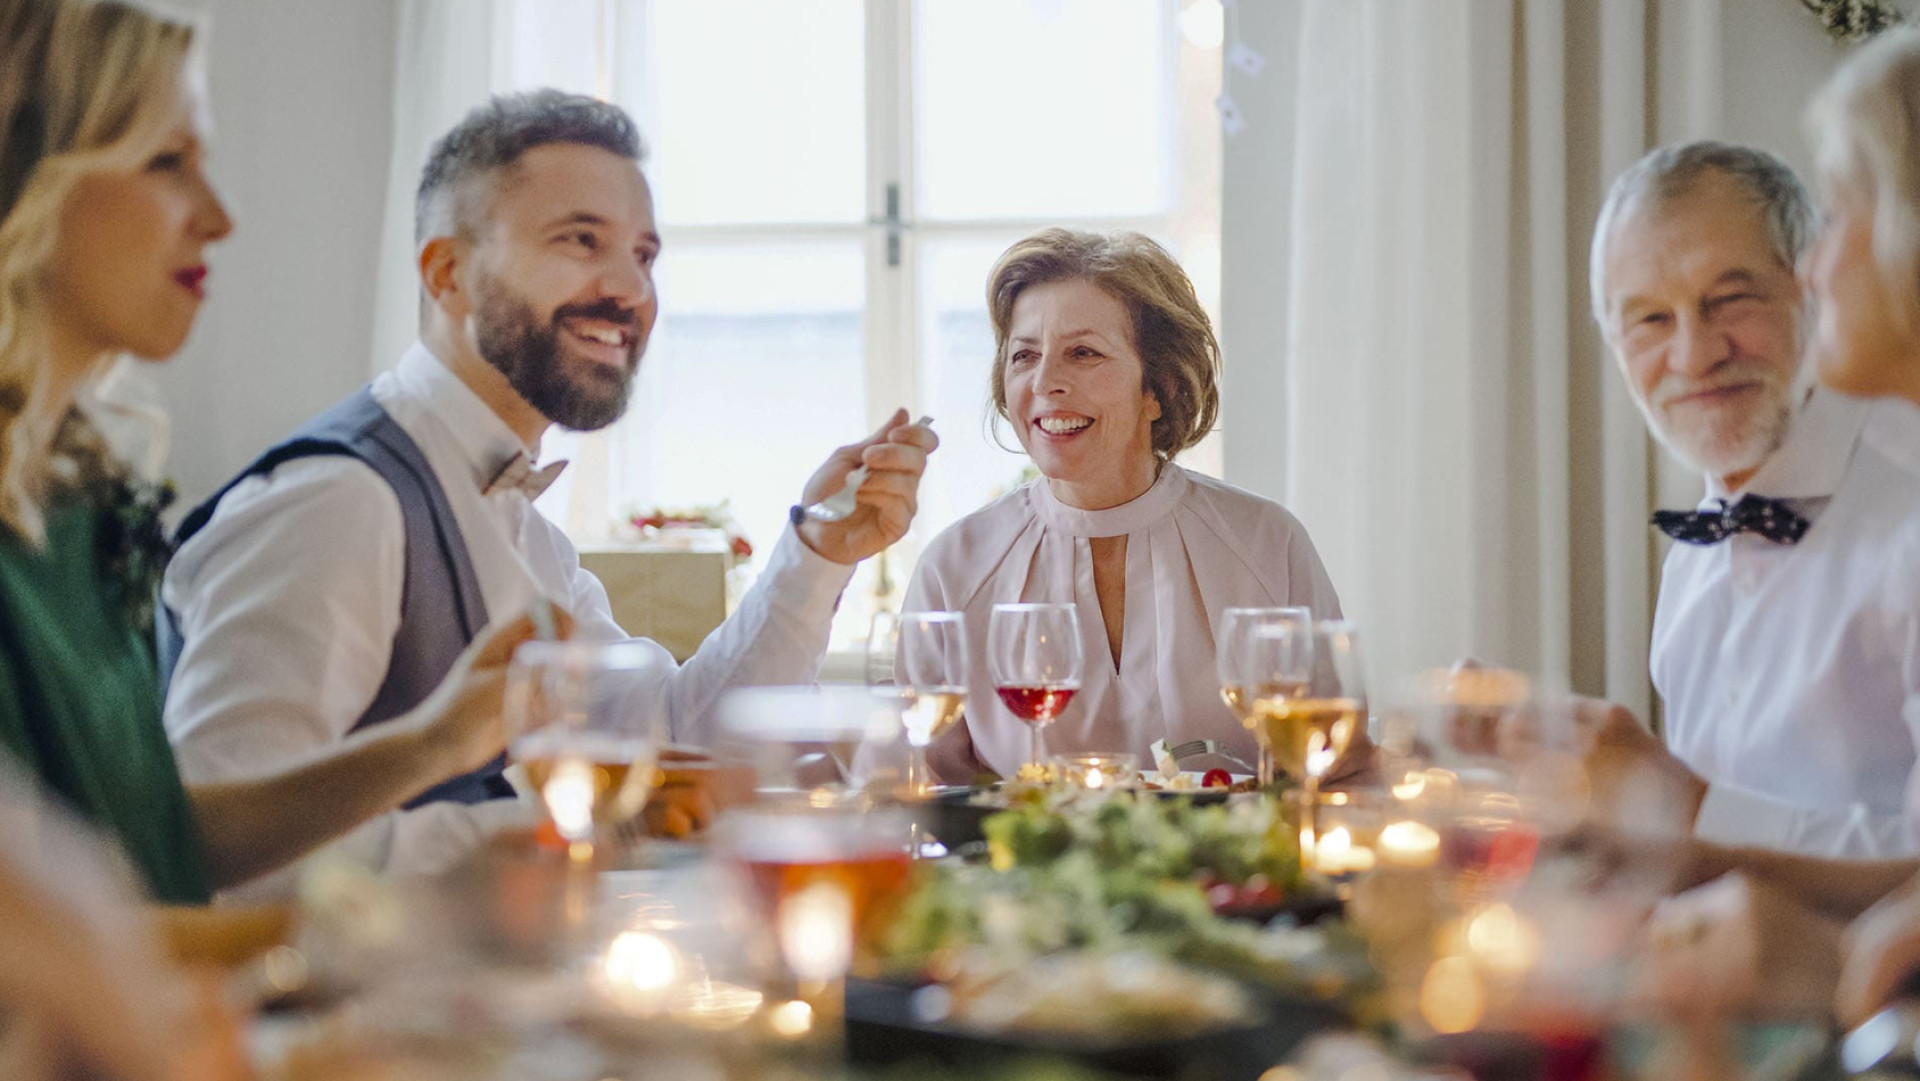 Ein gemeinsamer Moment bei einem Familienessen, einem gut gedeckten Tisch und einem guten Glas Wein. Momente, die die französische Lebensart perfekt veranschaulichen.